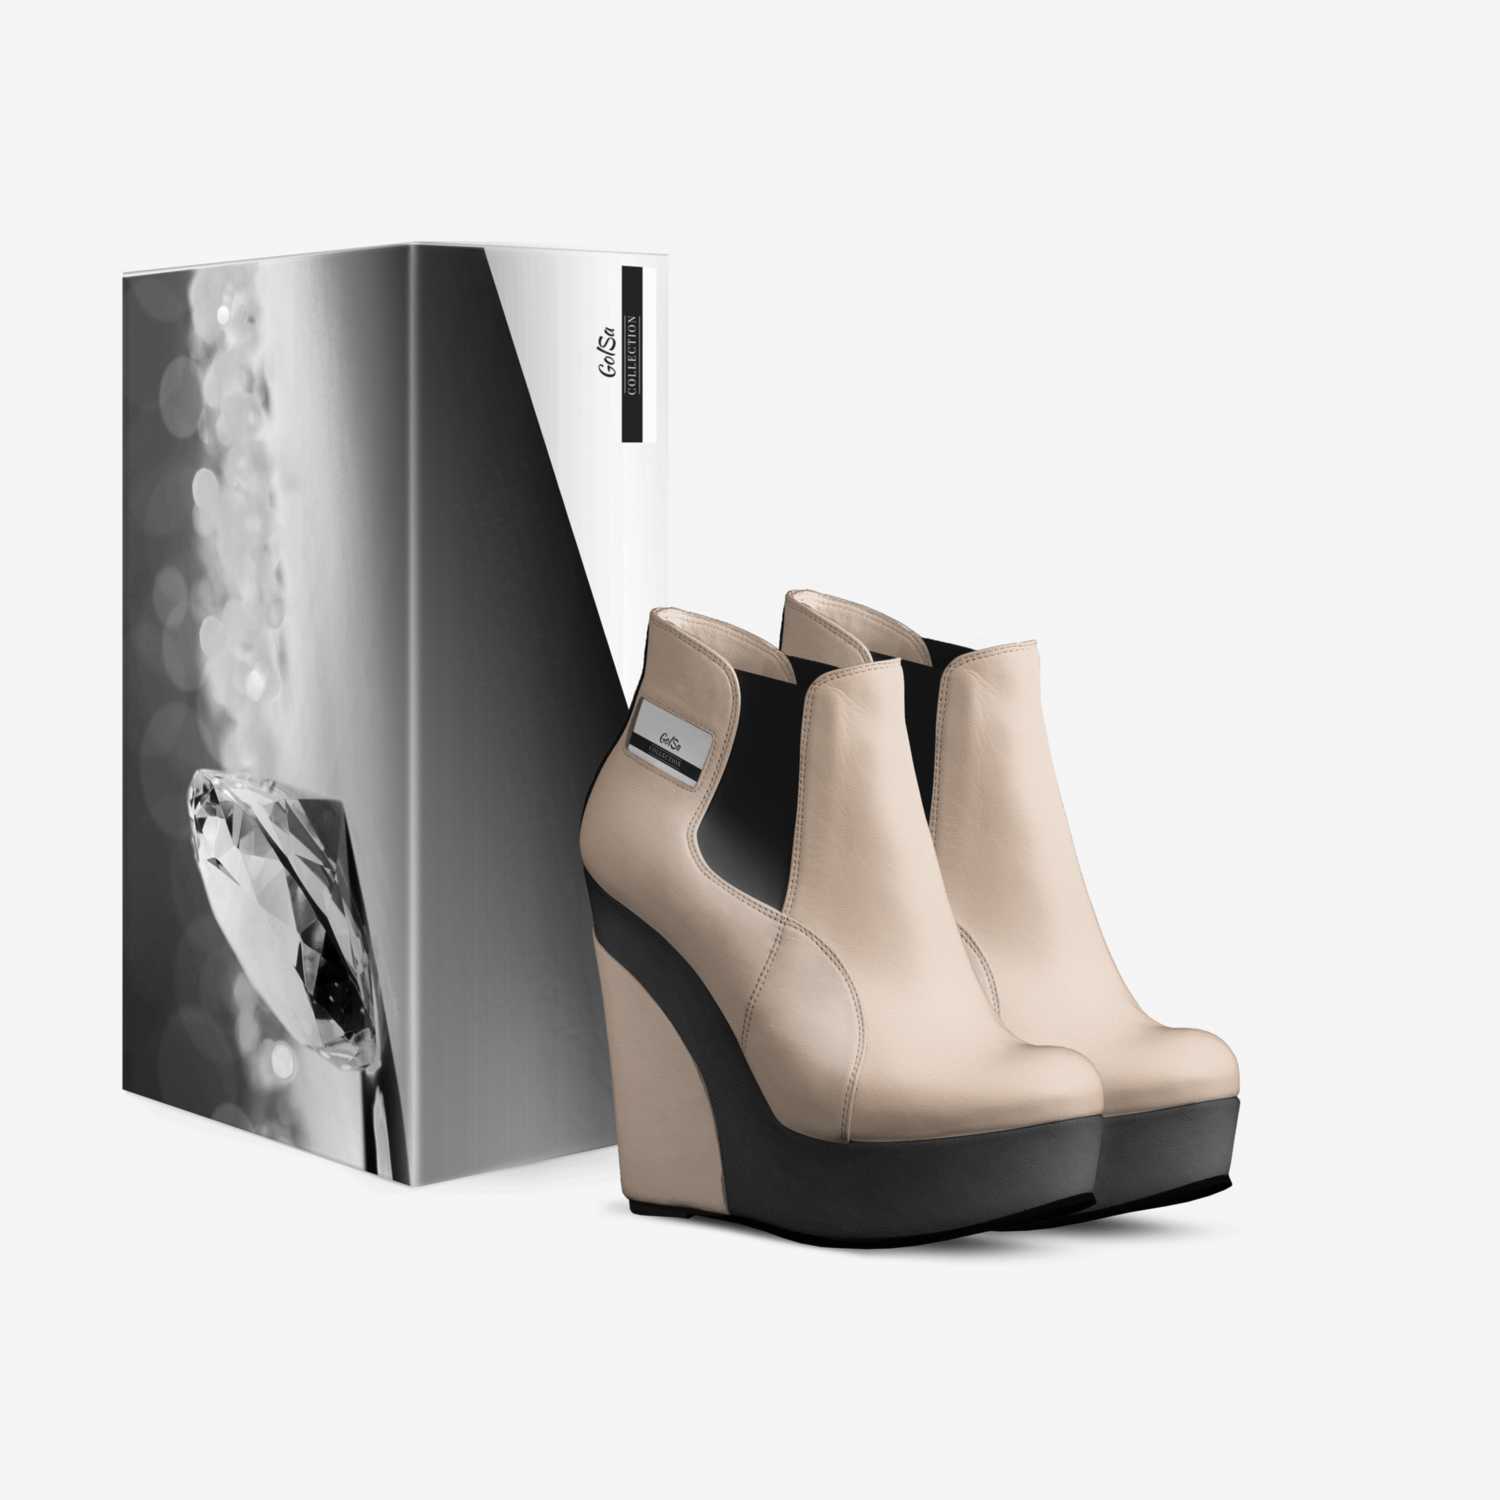 GolSa custom made in Italy shoes by Samanta | Box view